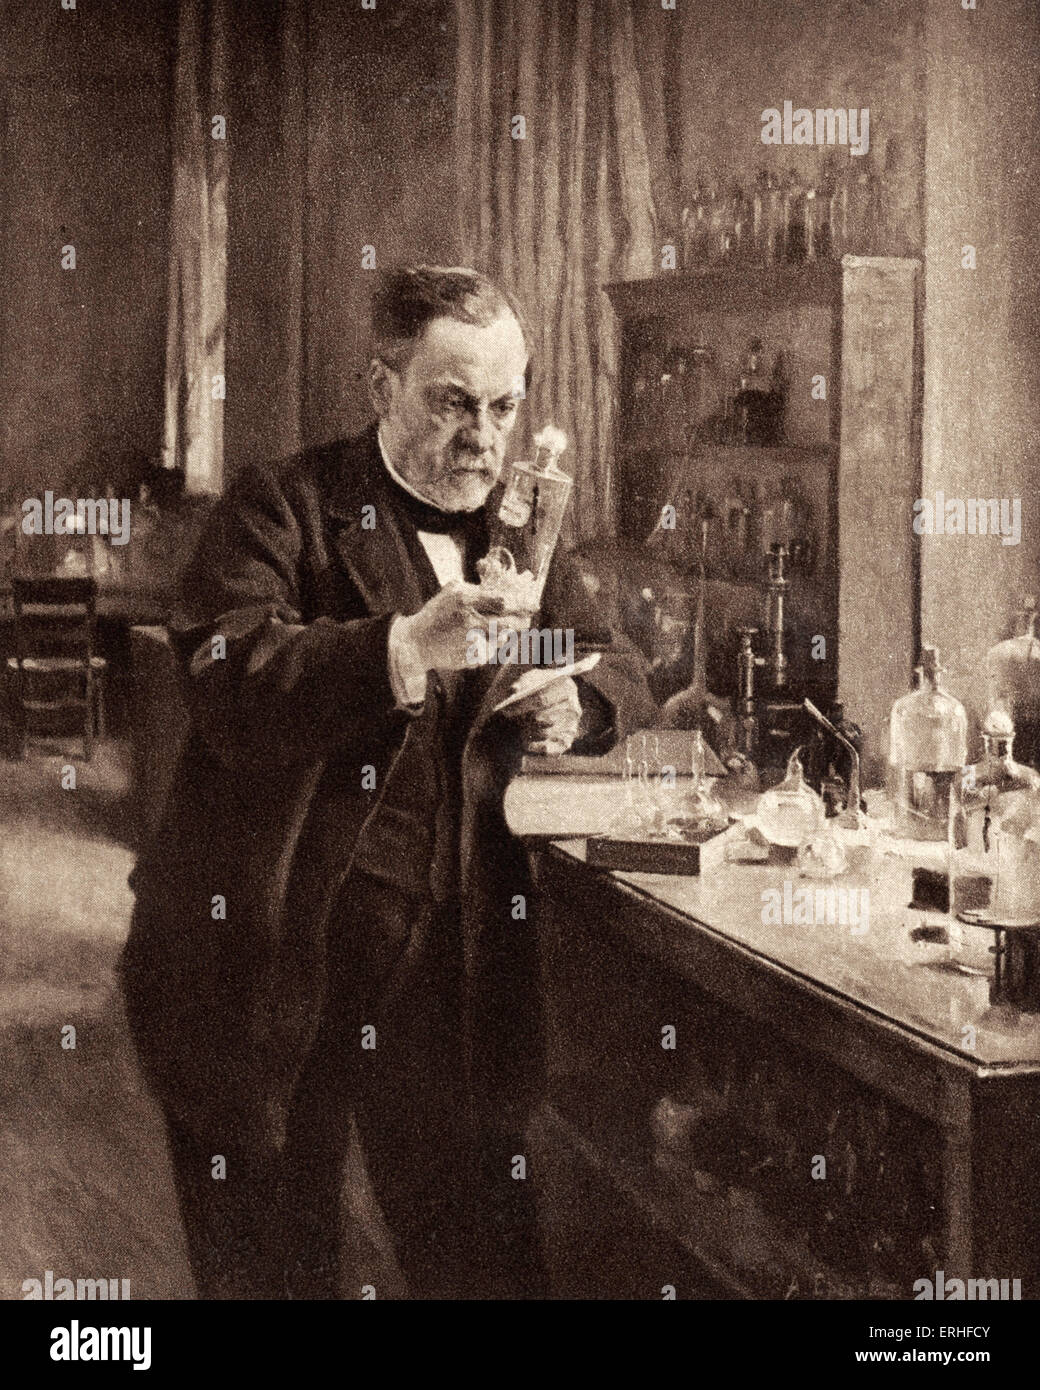 Louis Pasteur - Portrait von ihm in seinem Labor arbeiten. Französischer Chemiker, Biologen und Begründer der modernen Bakteriologie. 1822- Stockfoto